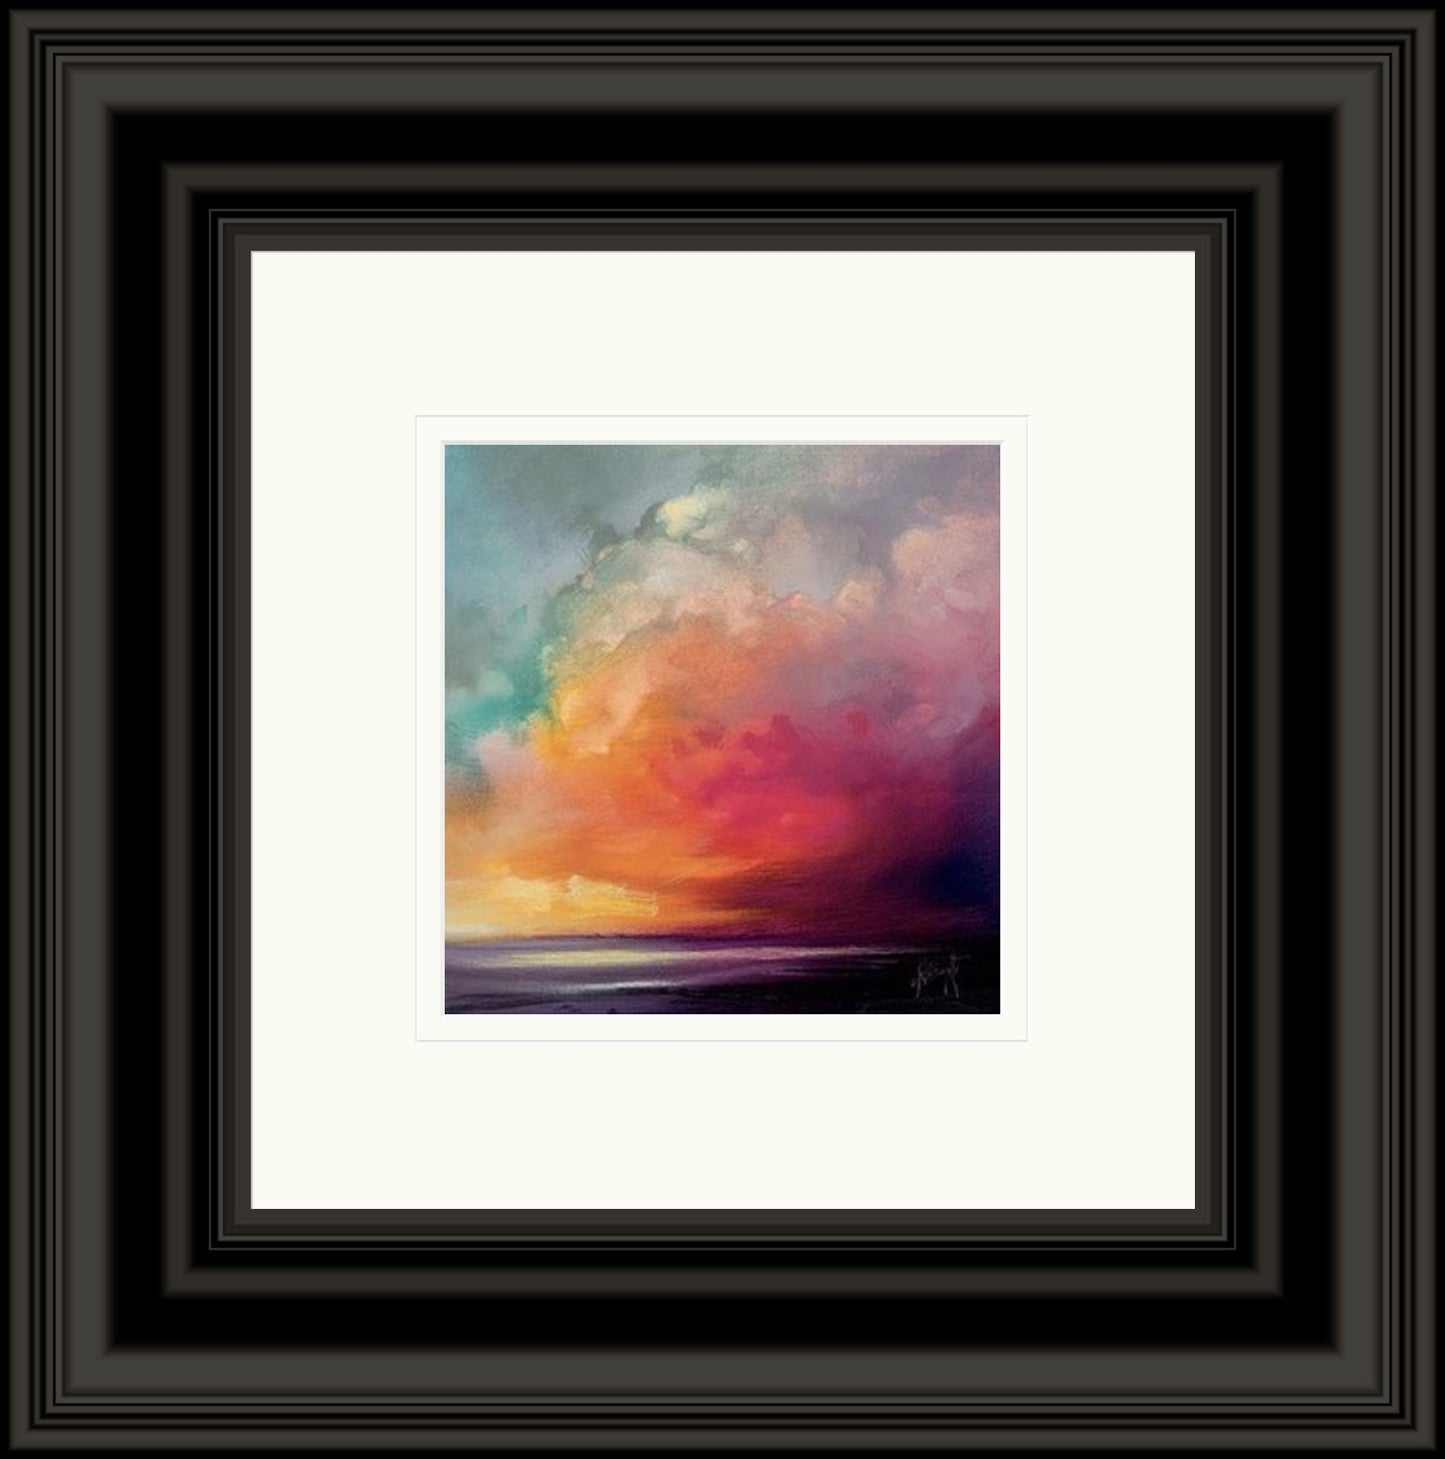 Sunset Cumulus Study 1 by Scott Naismith